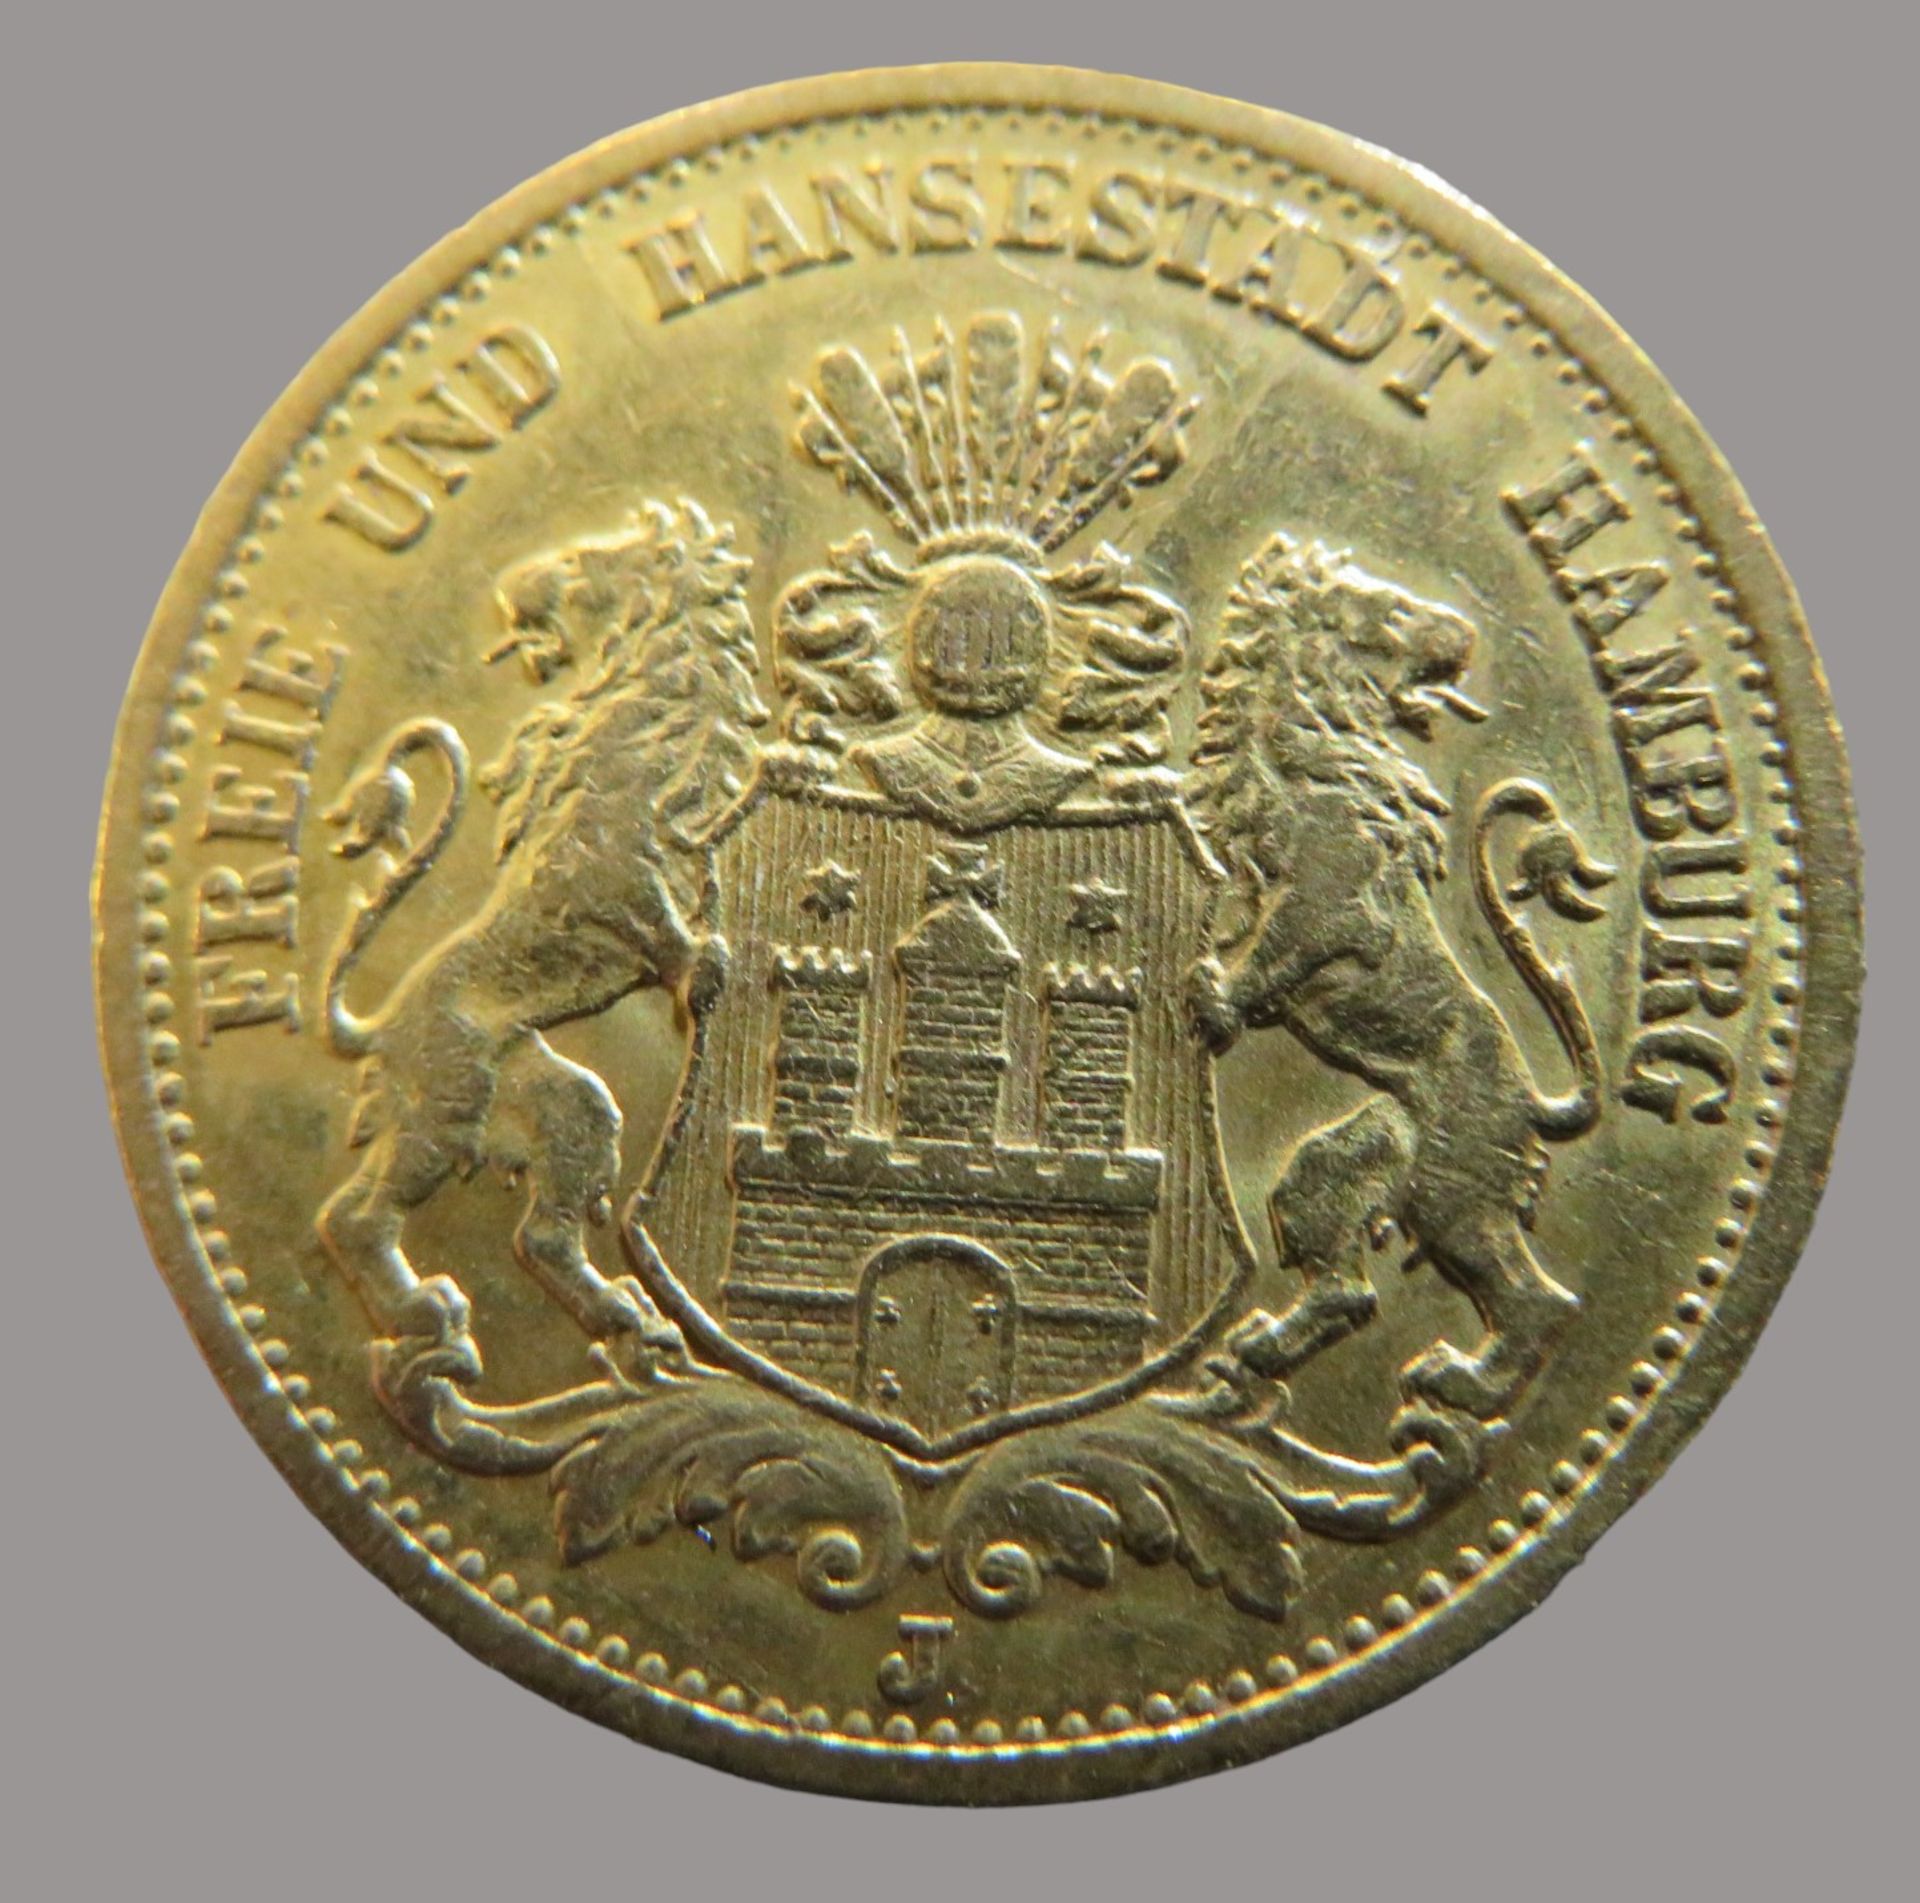 Goldmünze, 20 Mark, Hansestadt Hamburg, 1893J, Gold 900/000, 7,96 g, J 212, Erhaltungszustand SS, d